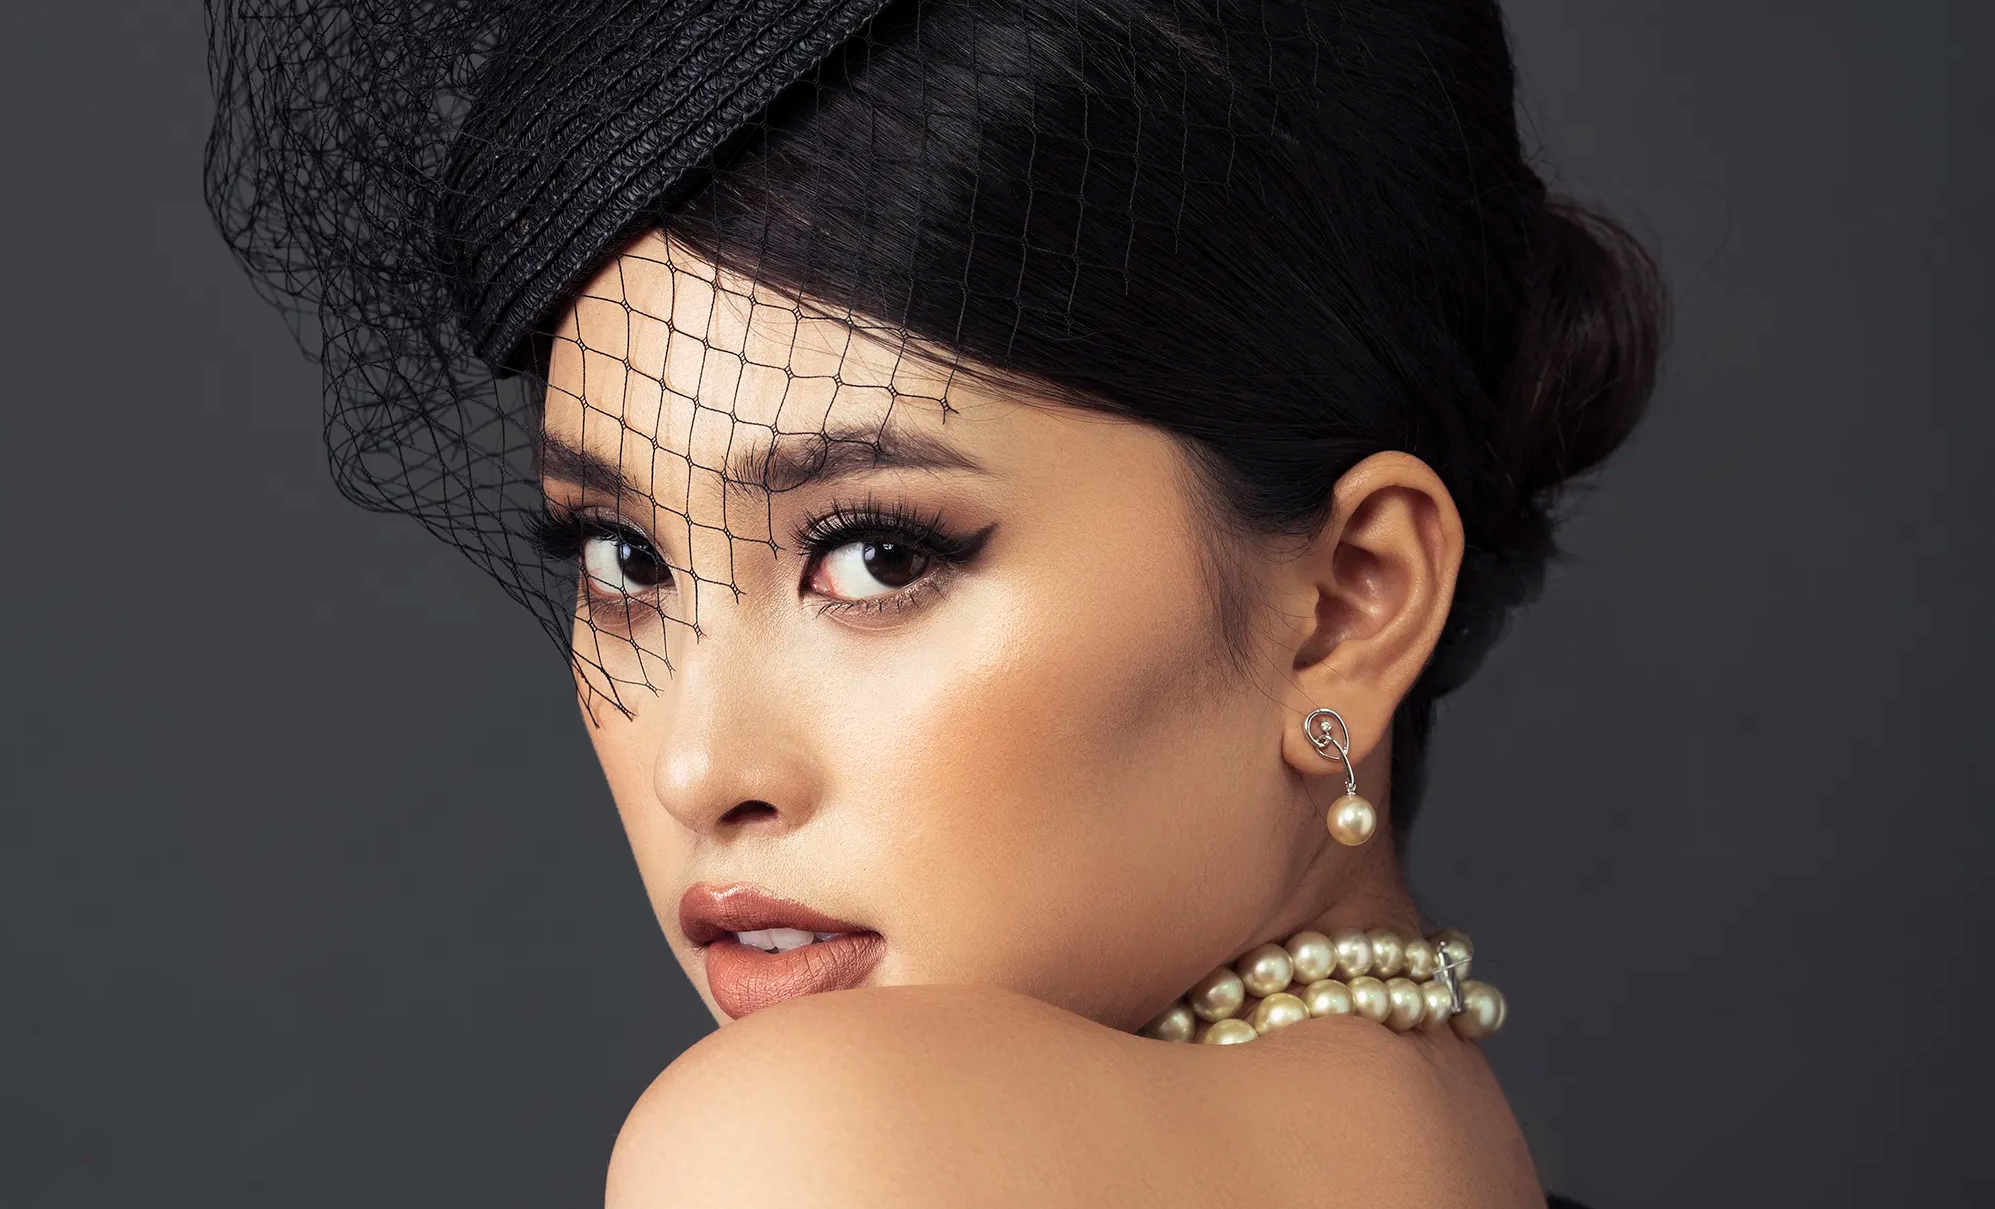 Hoa hậu Tiểu Vy ngày càng thăng hạng nhan sắc